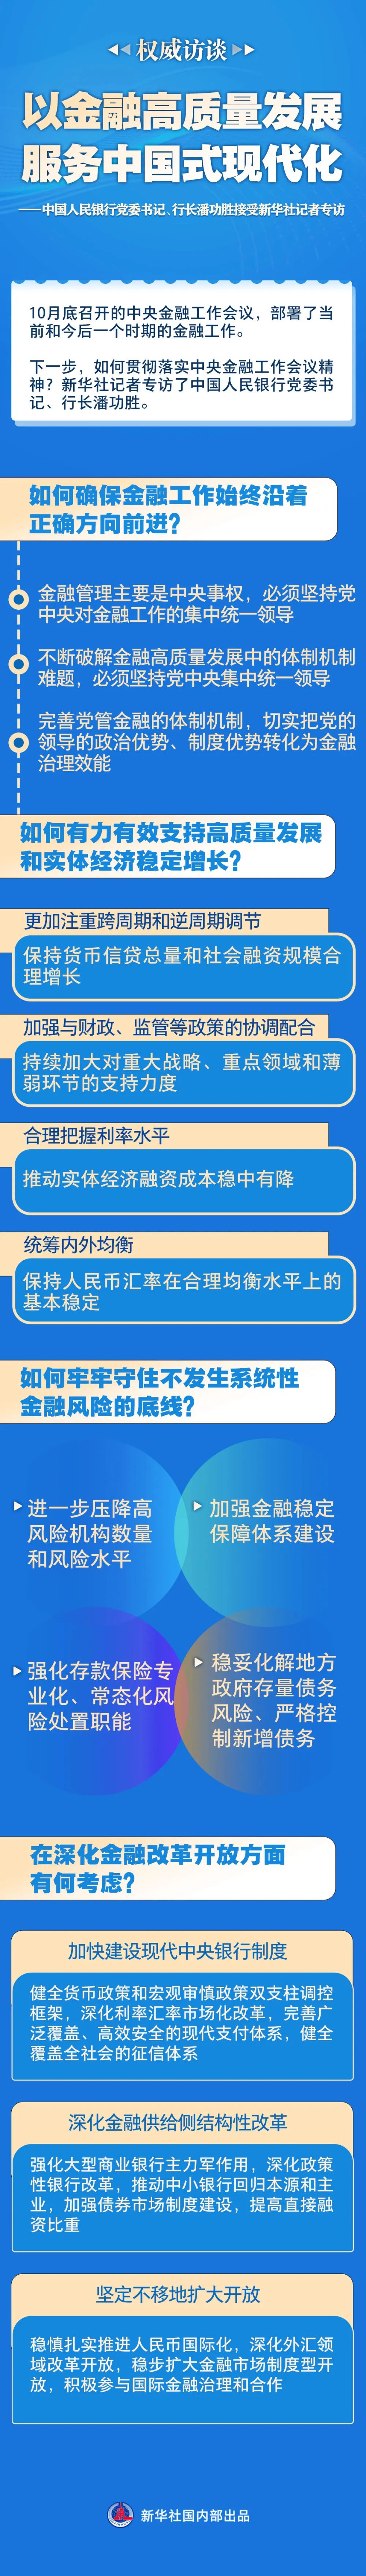 中国人民银行党委书记、行长潘功胜接受新华社记者专访